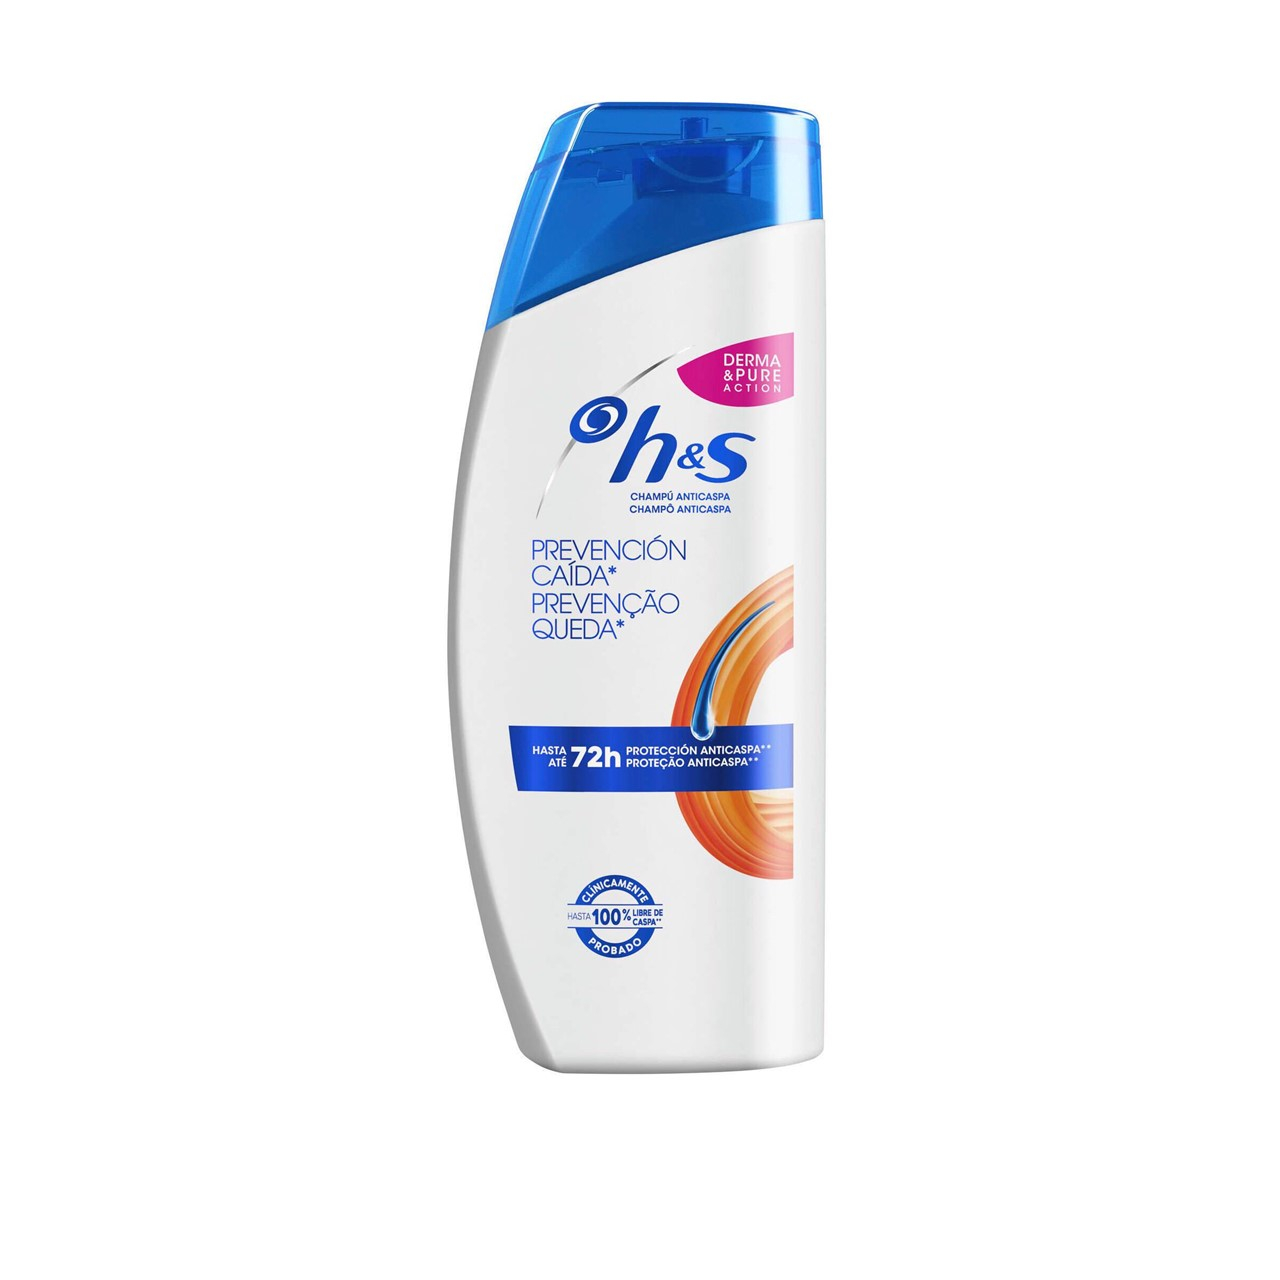 H&S Anti-Hair Loss Shampoo 650ml